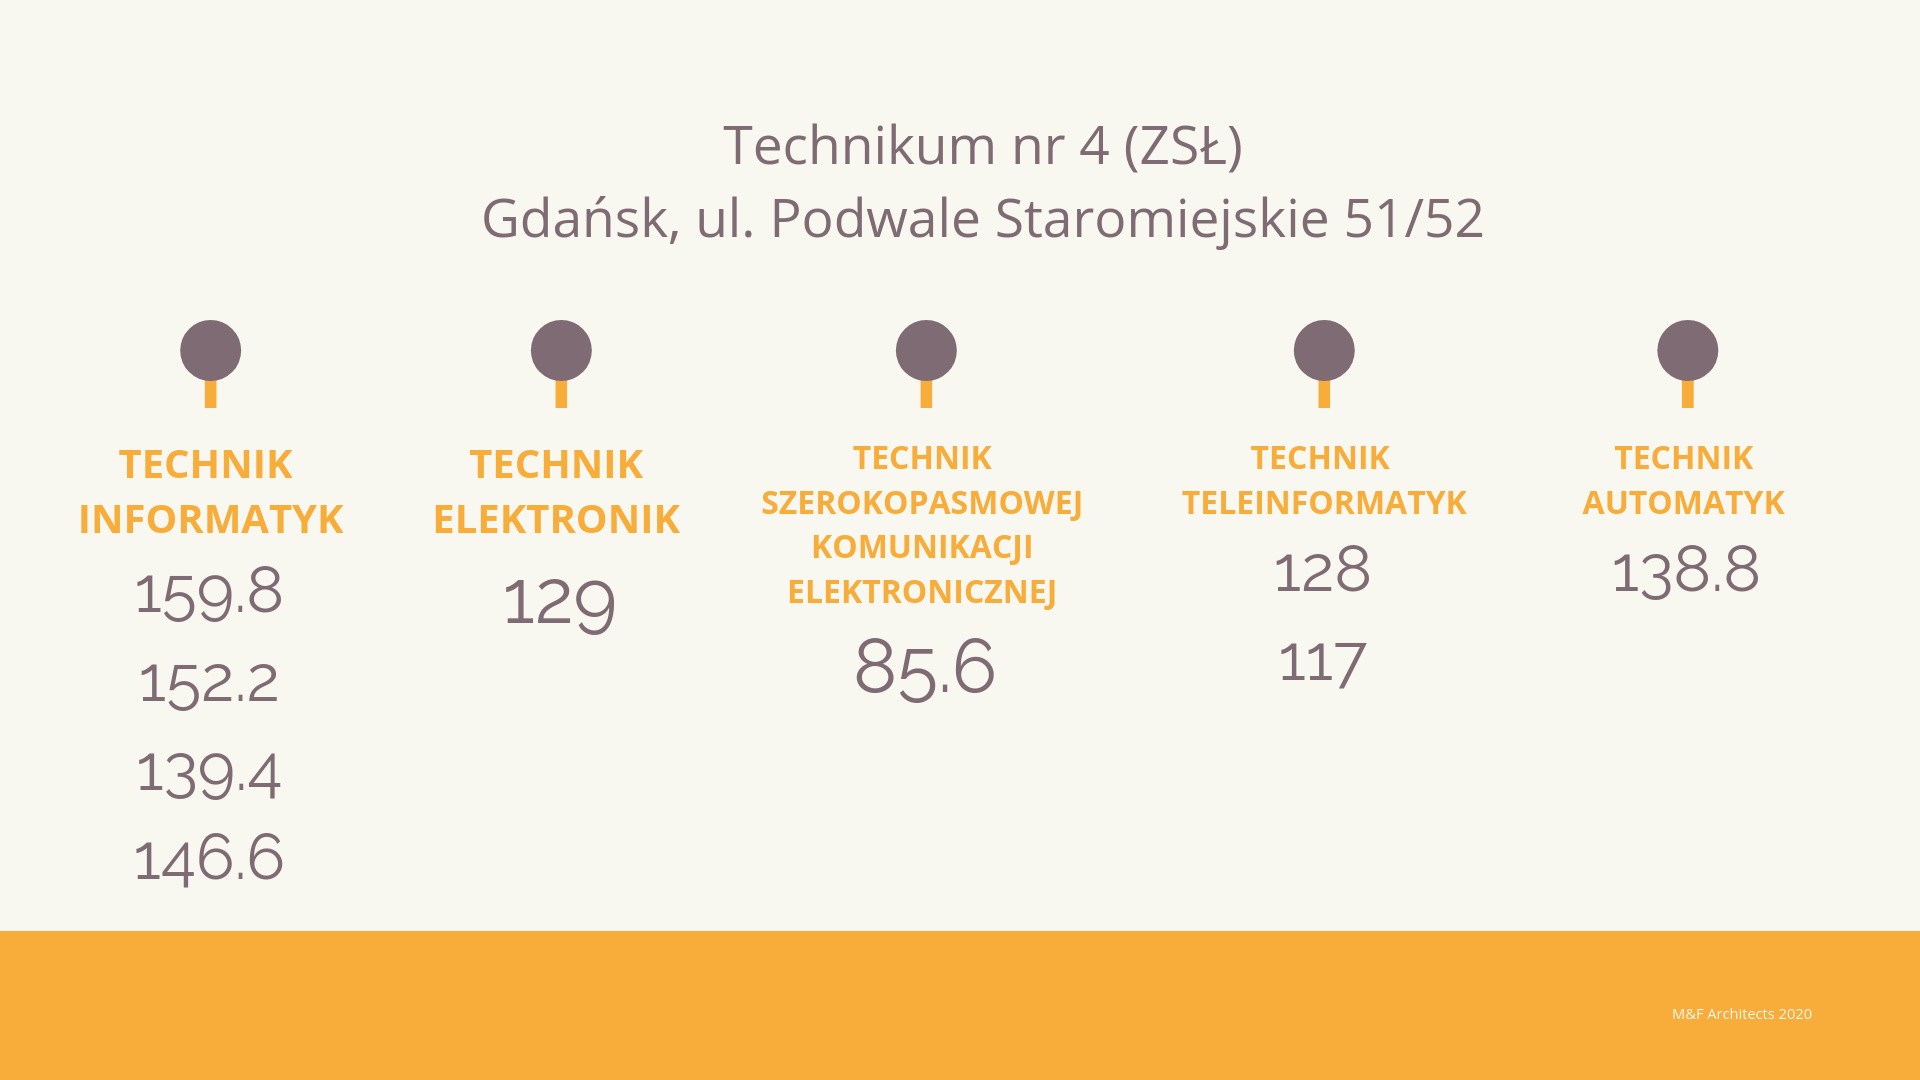 Progi punktowe w technikach w Gdańsku w 2018 r. Ile punktów trzeba było - Jaką Trzeba Mieć średnią żeby Mieć Pasek